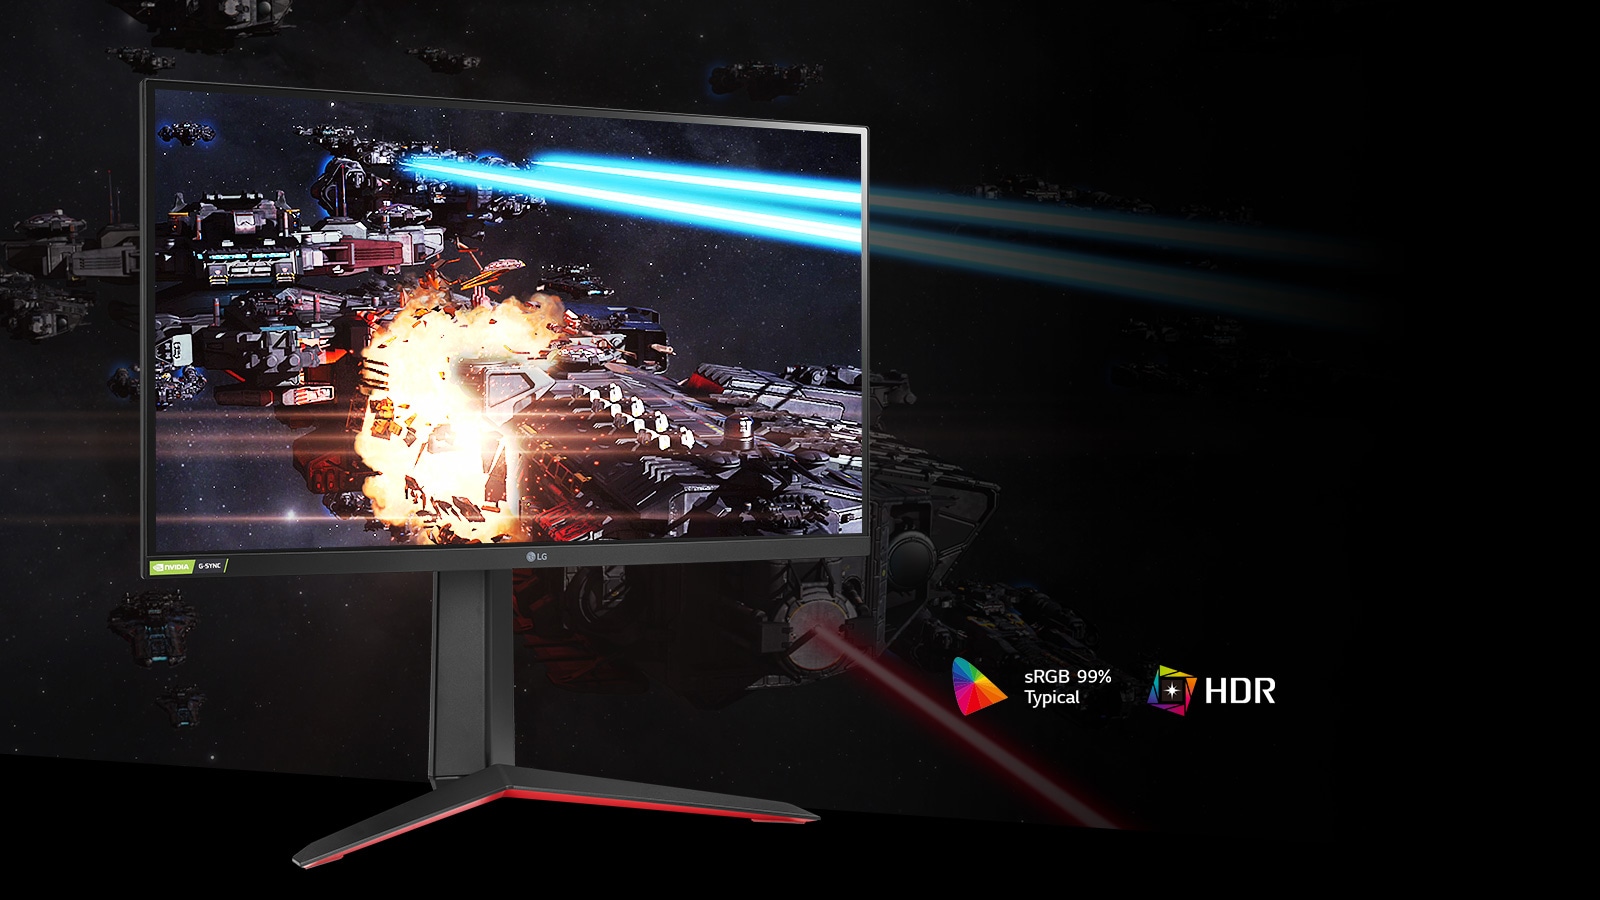 صحنه بازی در رنگ های غنی و کنتراست در مانیتور با پشتیبانی از HDR10 با sRGB 99٪ (نوع).